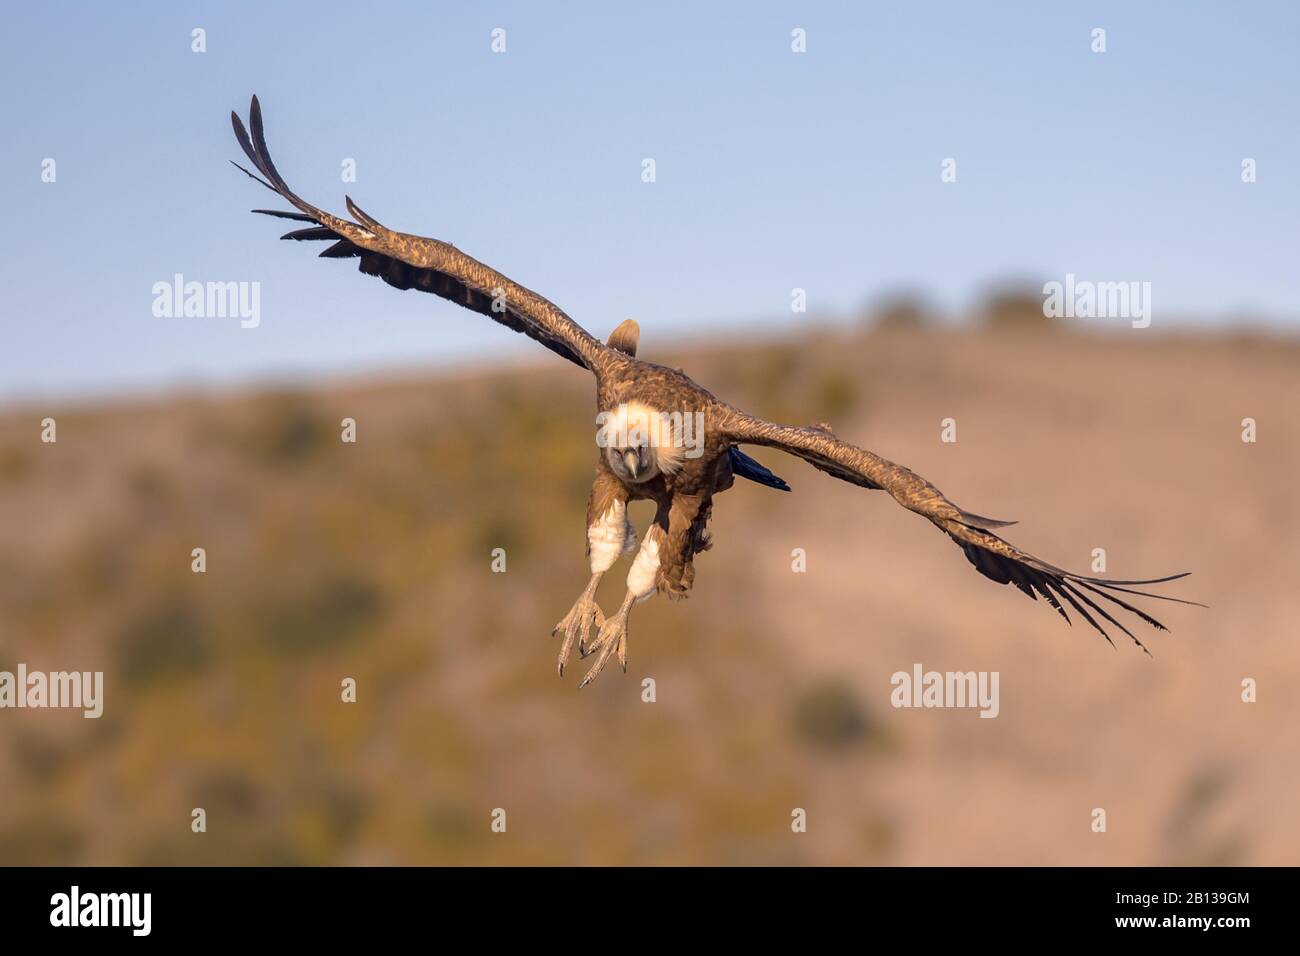 Grifone (Gips fulvus) volare e prepararsi ad atterrare nei Pirenei spagnoli, Catalogna, Spagna, aprile. Questo è un grande avvoltoio del Vecchio mondo nel Foto Stock